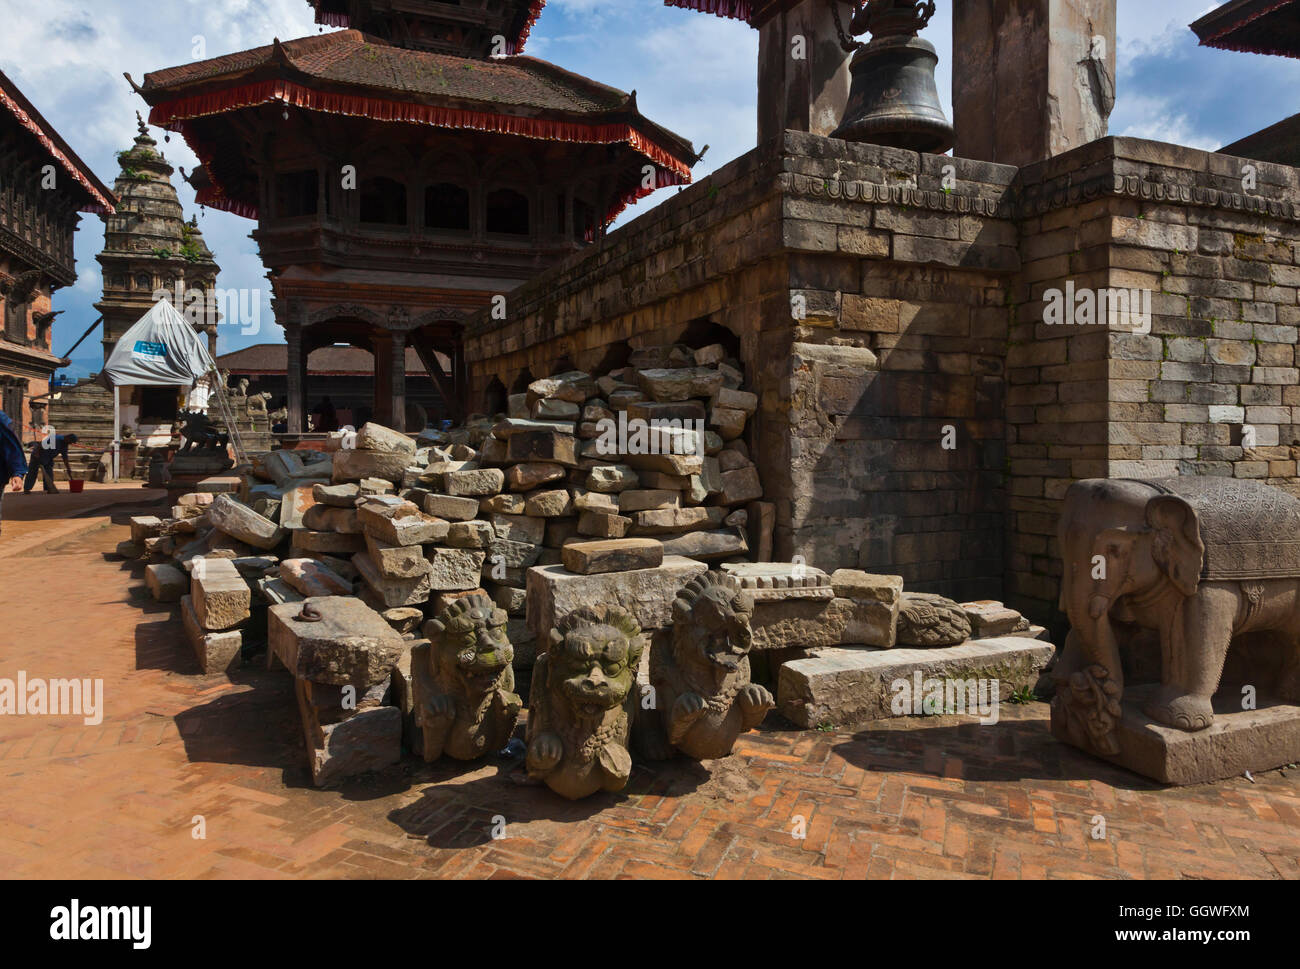 Villageois reconstruisent dans la ville traditionnelle de Bhaktapur qui avait été gravement endommagé par le séisme de 2015 - Népal Banque D'Images